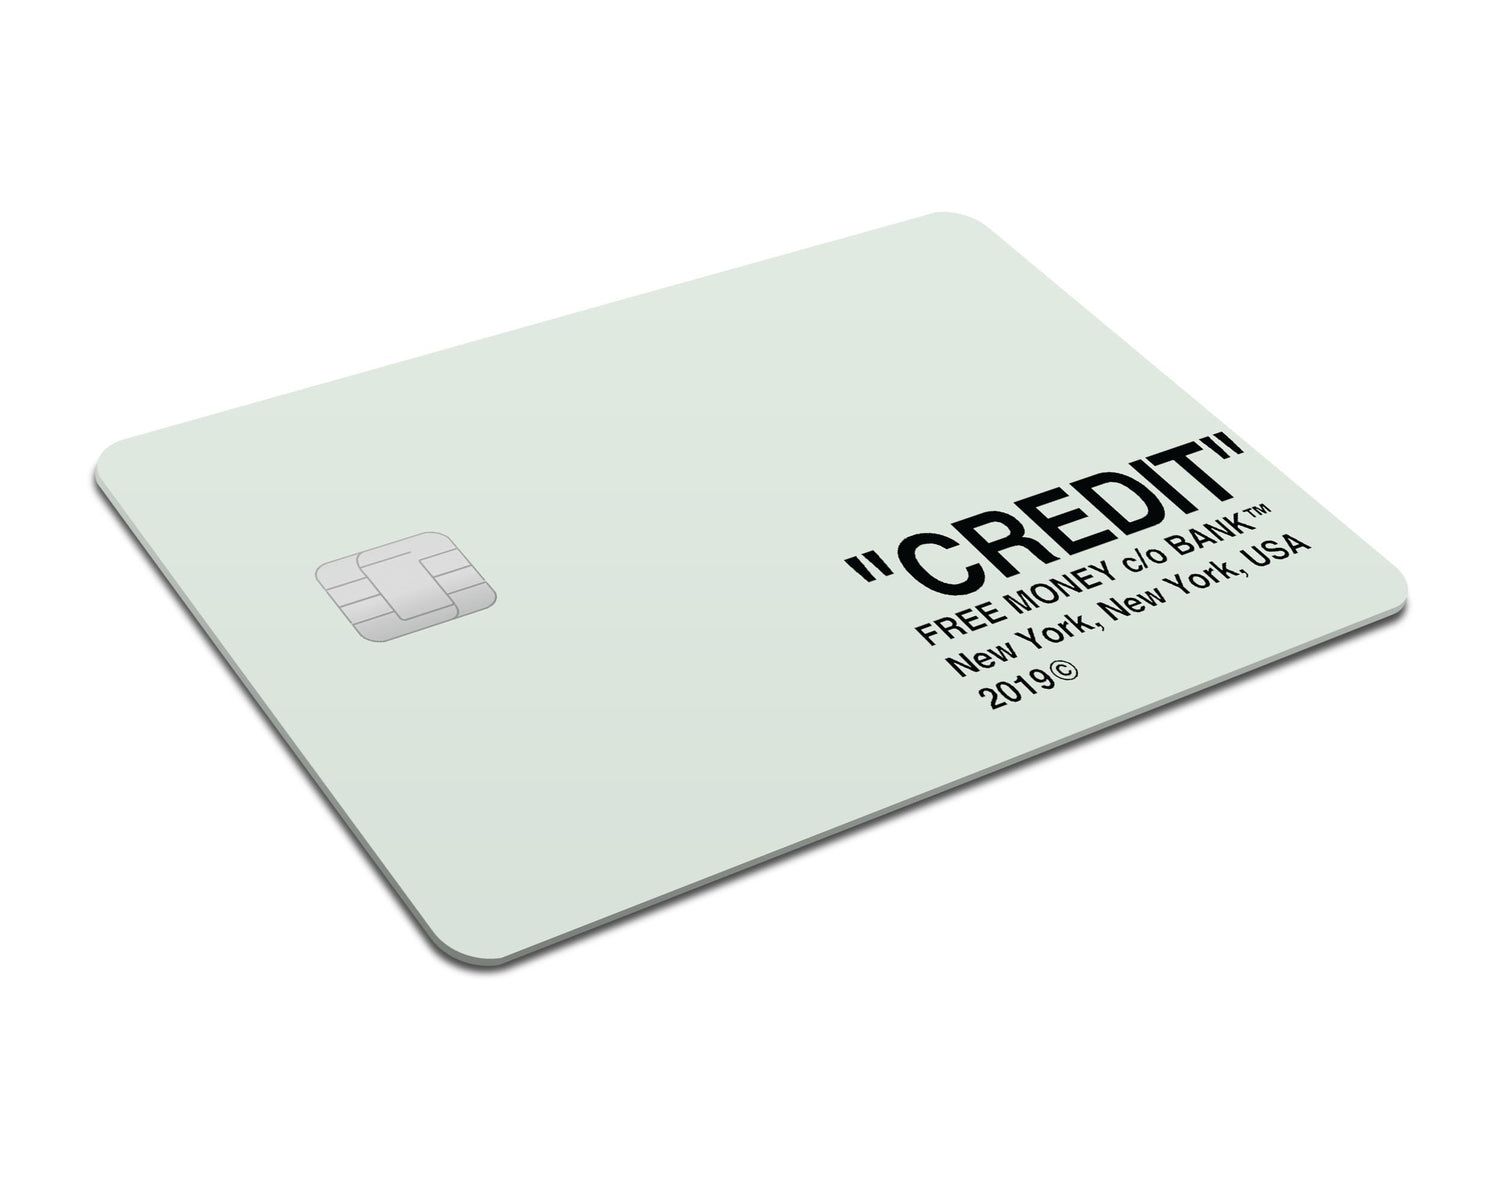 debit card skin